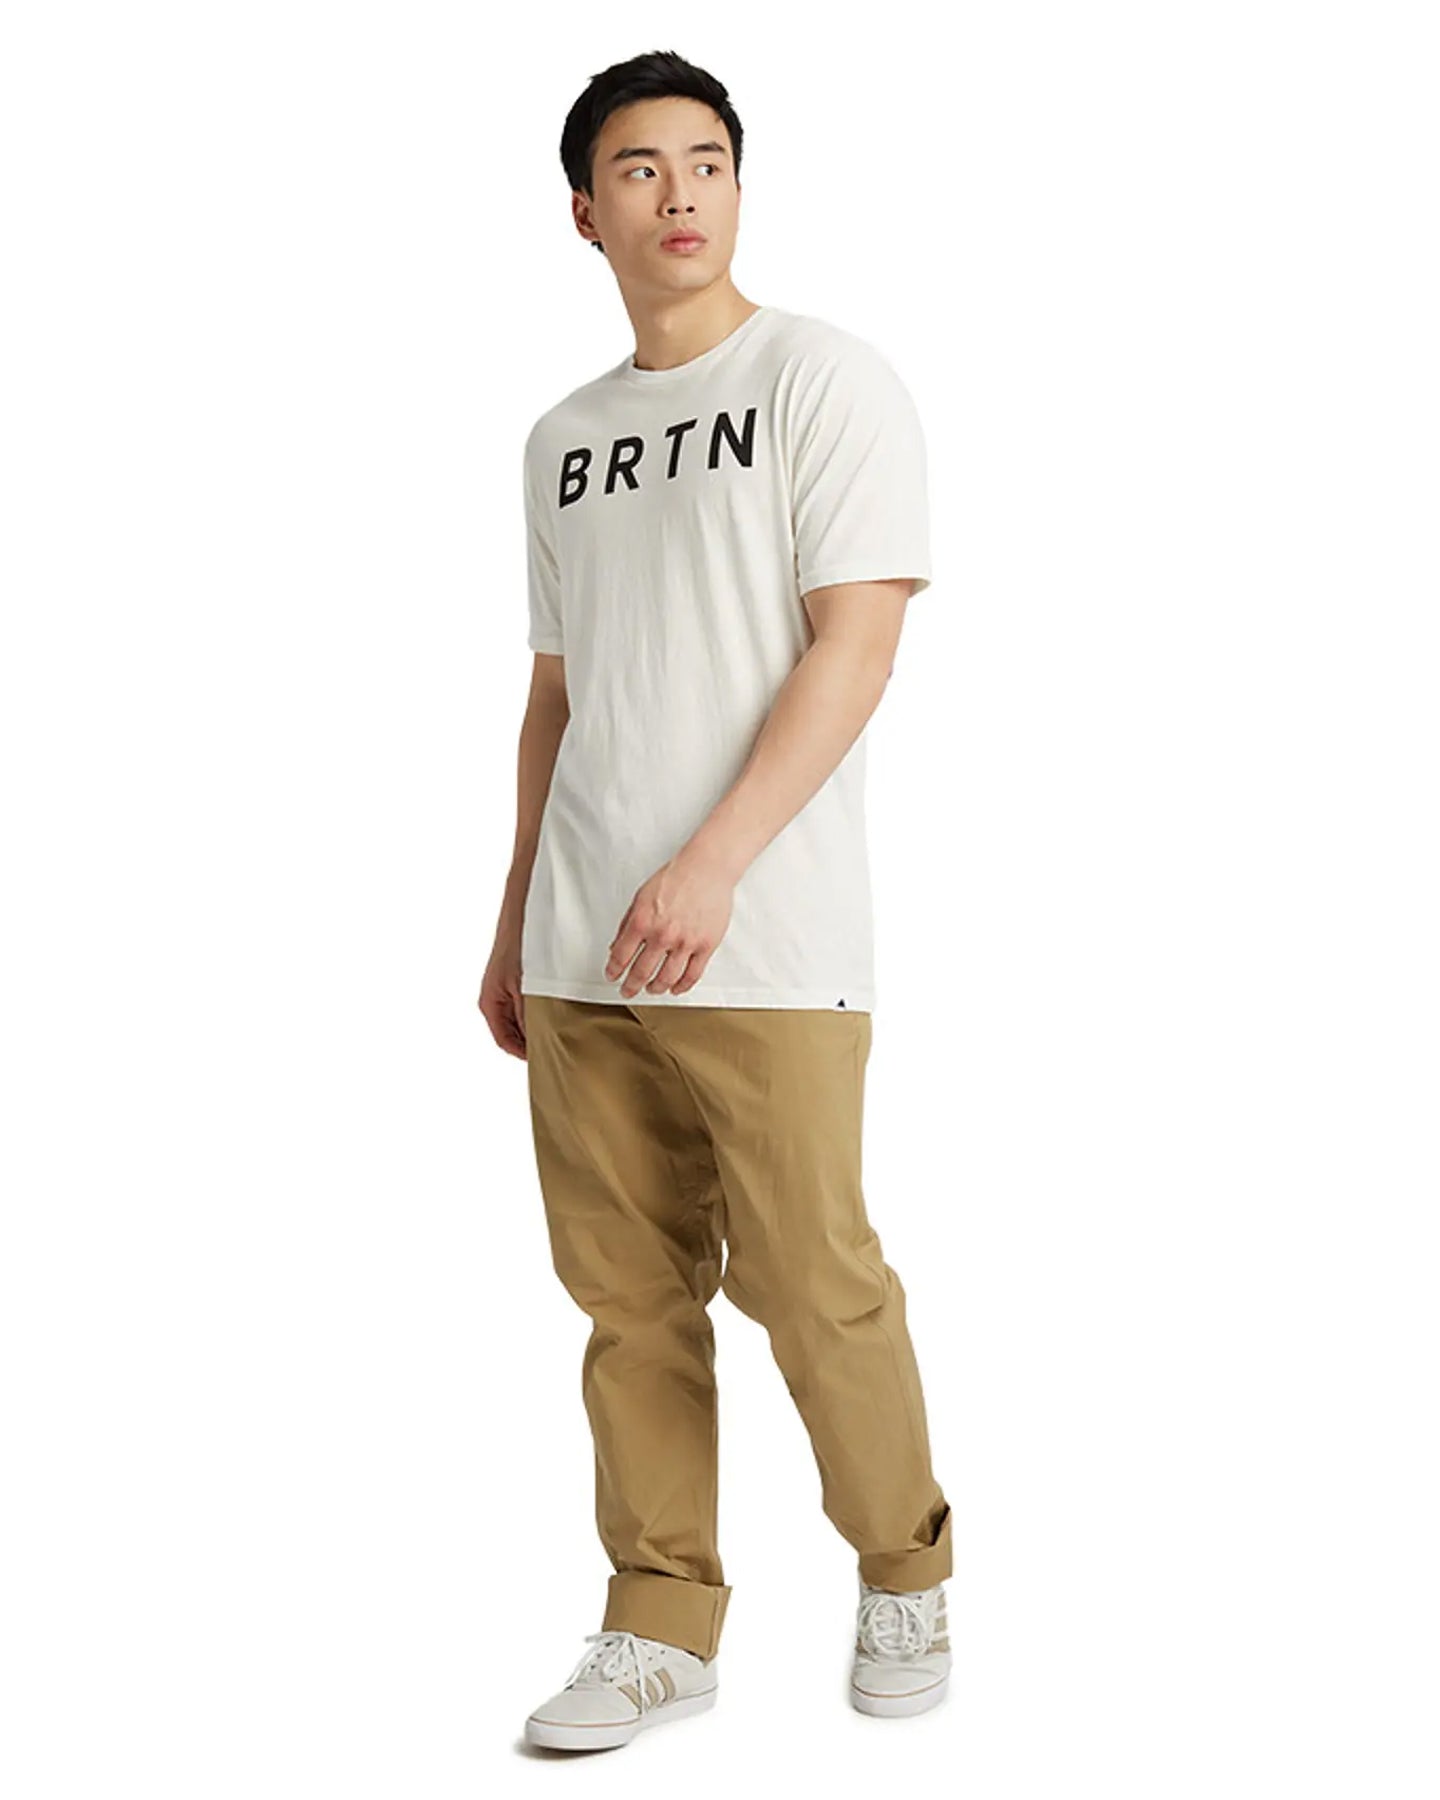 Burton BRTN Short Sleeve Tee - Stout White - 2022 Shirts & Tops - SnowSkiersWarehouse